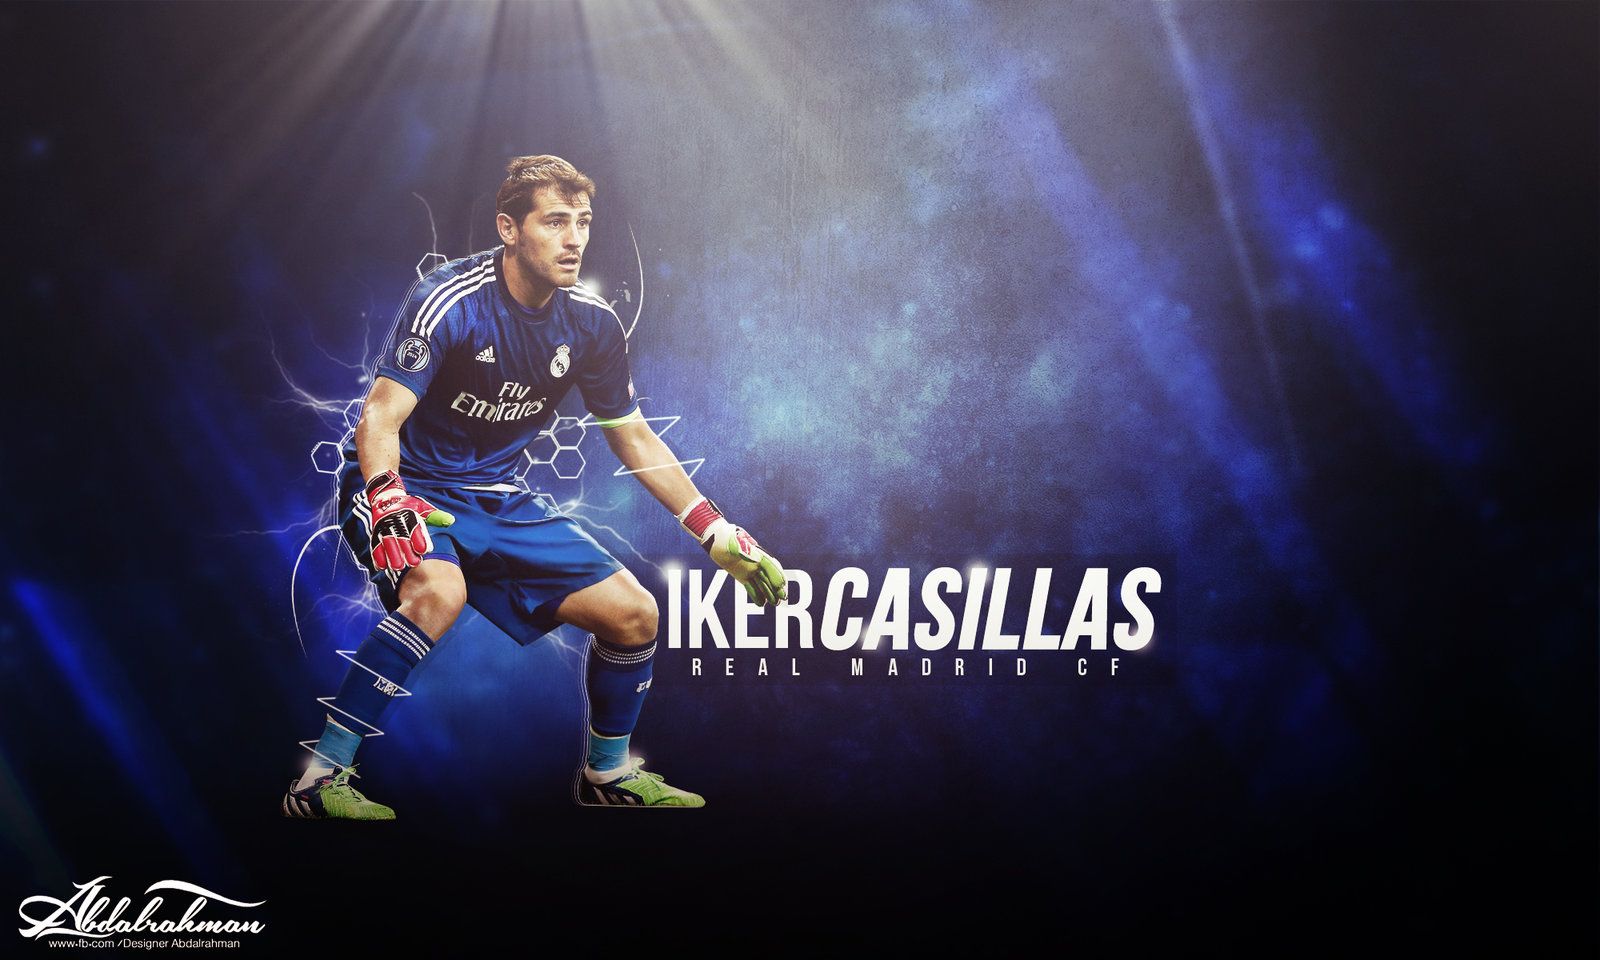 Casillas Wallpaper. Casillas Wallpaper, Iker Casillas Wallpaper and Casillas Save Wallpaper